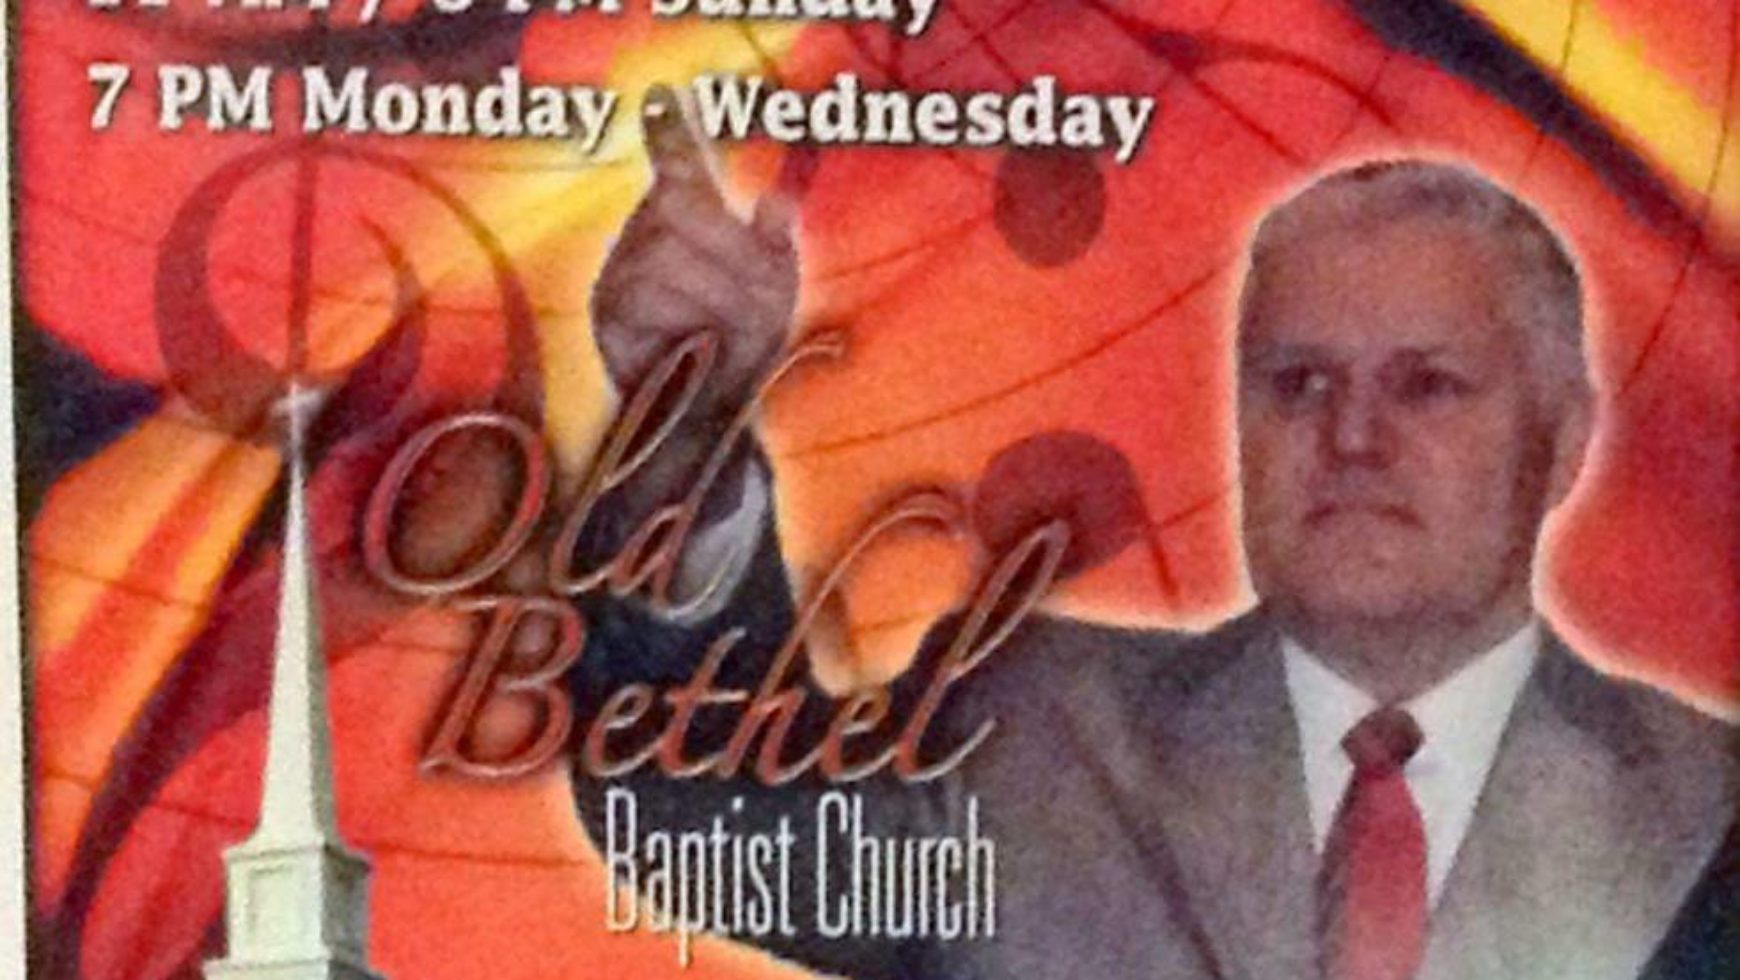 Area Meeting: Revival – Old Bethel Baptist Church – Chickamauga, Ga